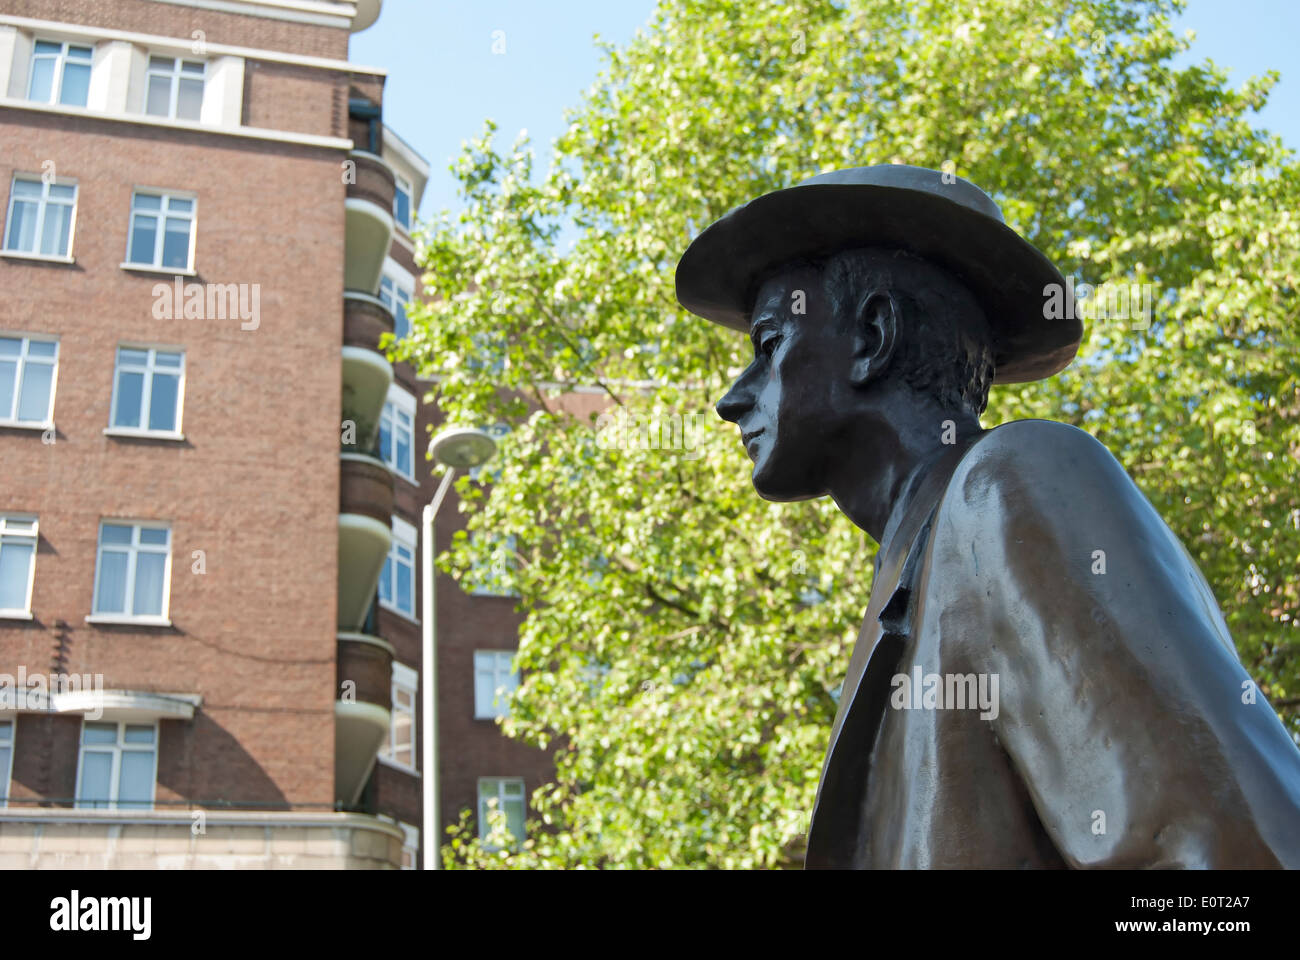 Dettaglio dello scultore Imre Varga della statua del compositore ungherese Bela Bartok, South Kensington, Londra, Inghilterra Foto Stock